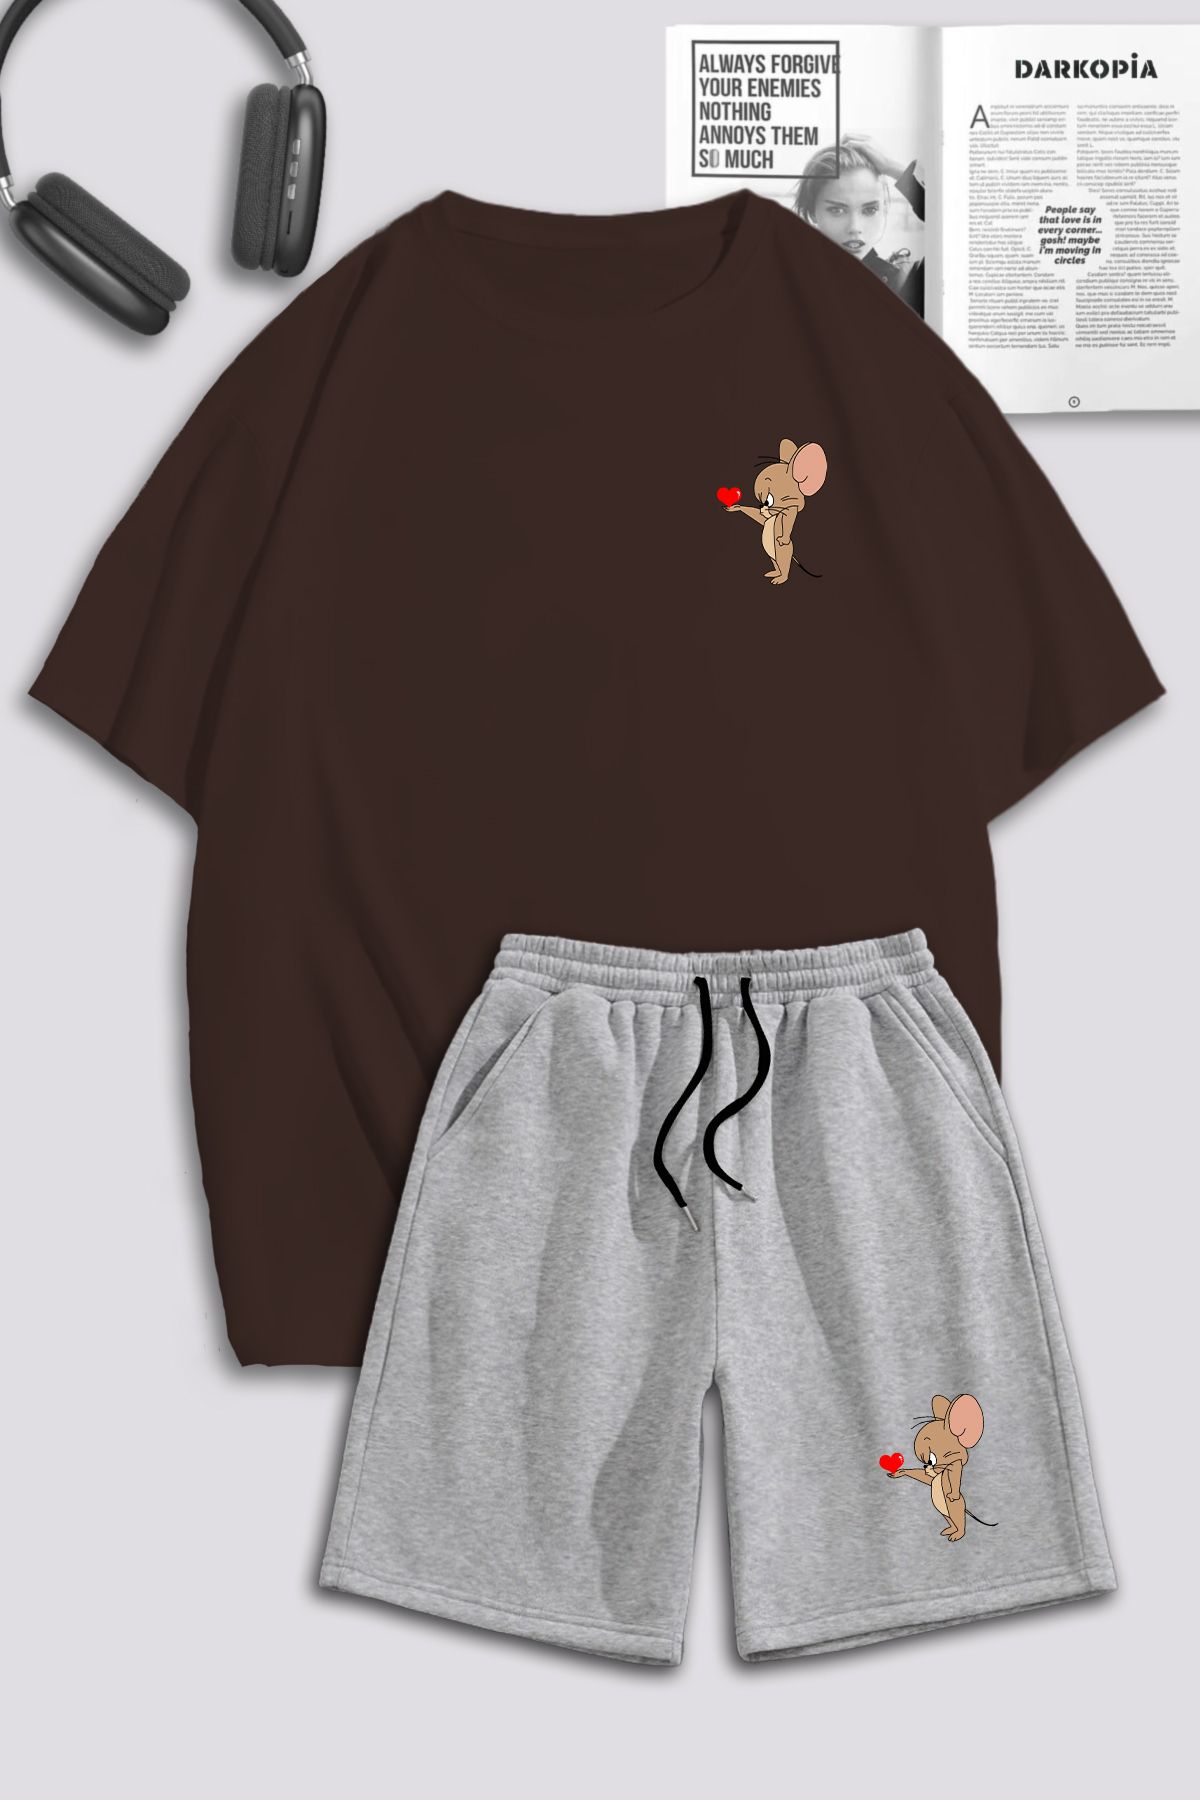 macklin Unisex Kadın Erkek Tom ve Jerry Kalp Baskılı Özel Tasarım Oversize Tshirt Ve Şort Eşofman Takımı